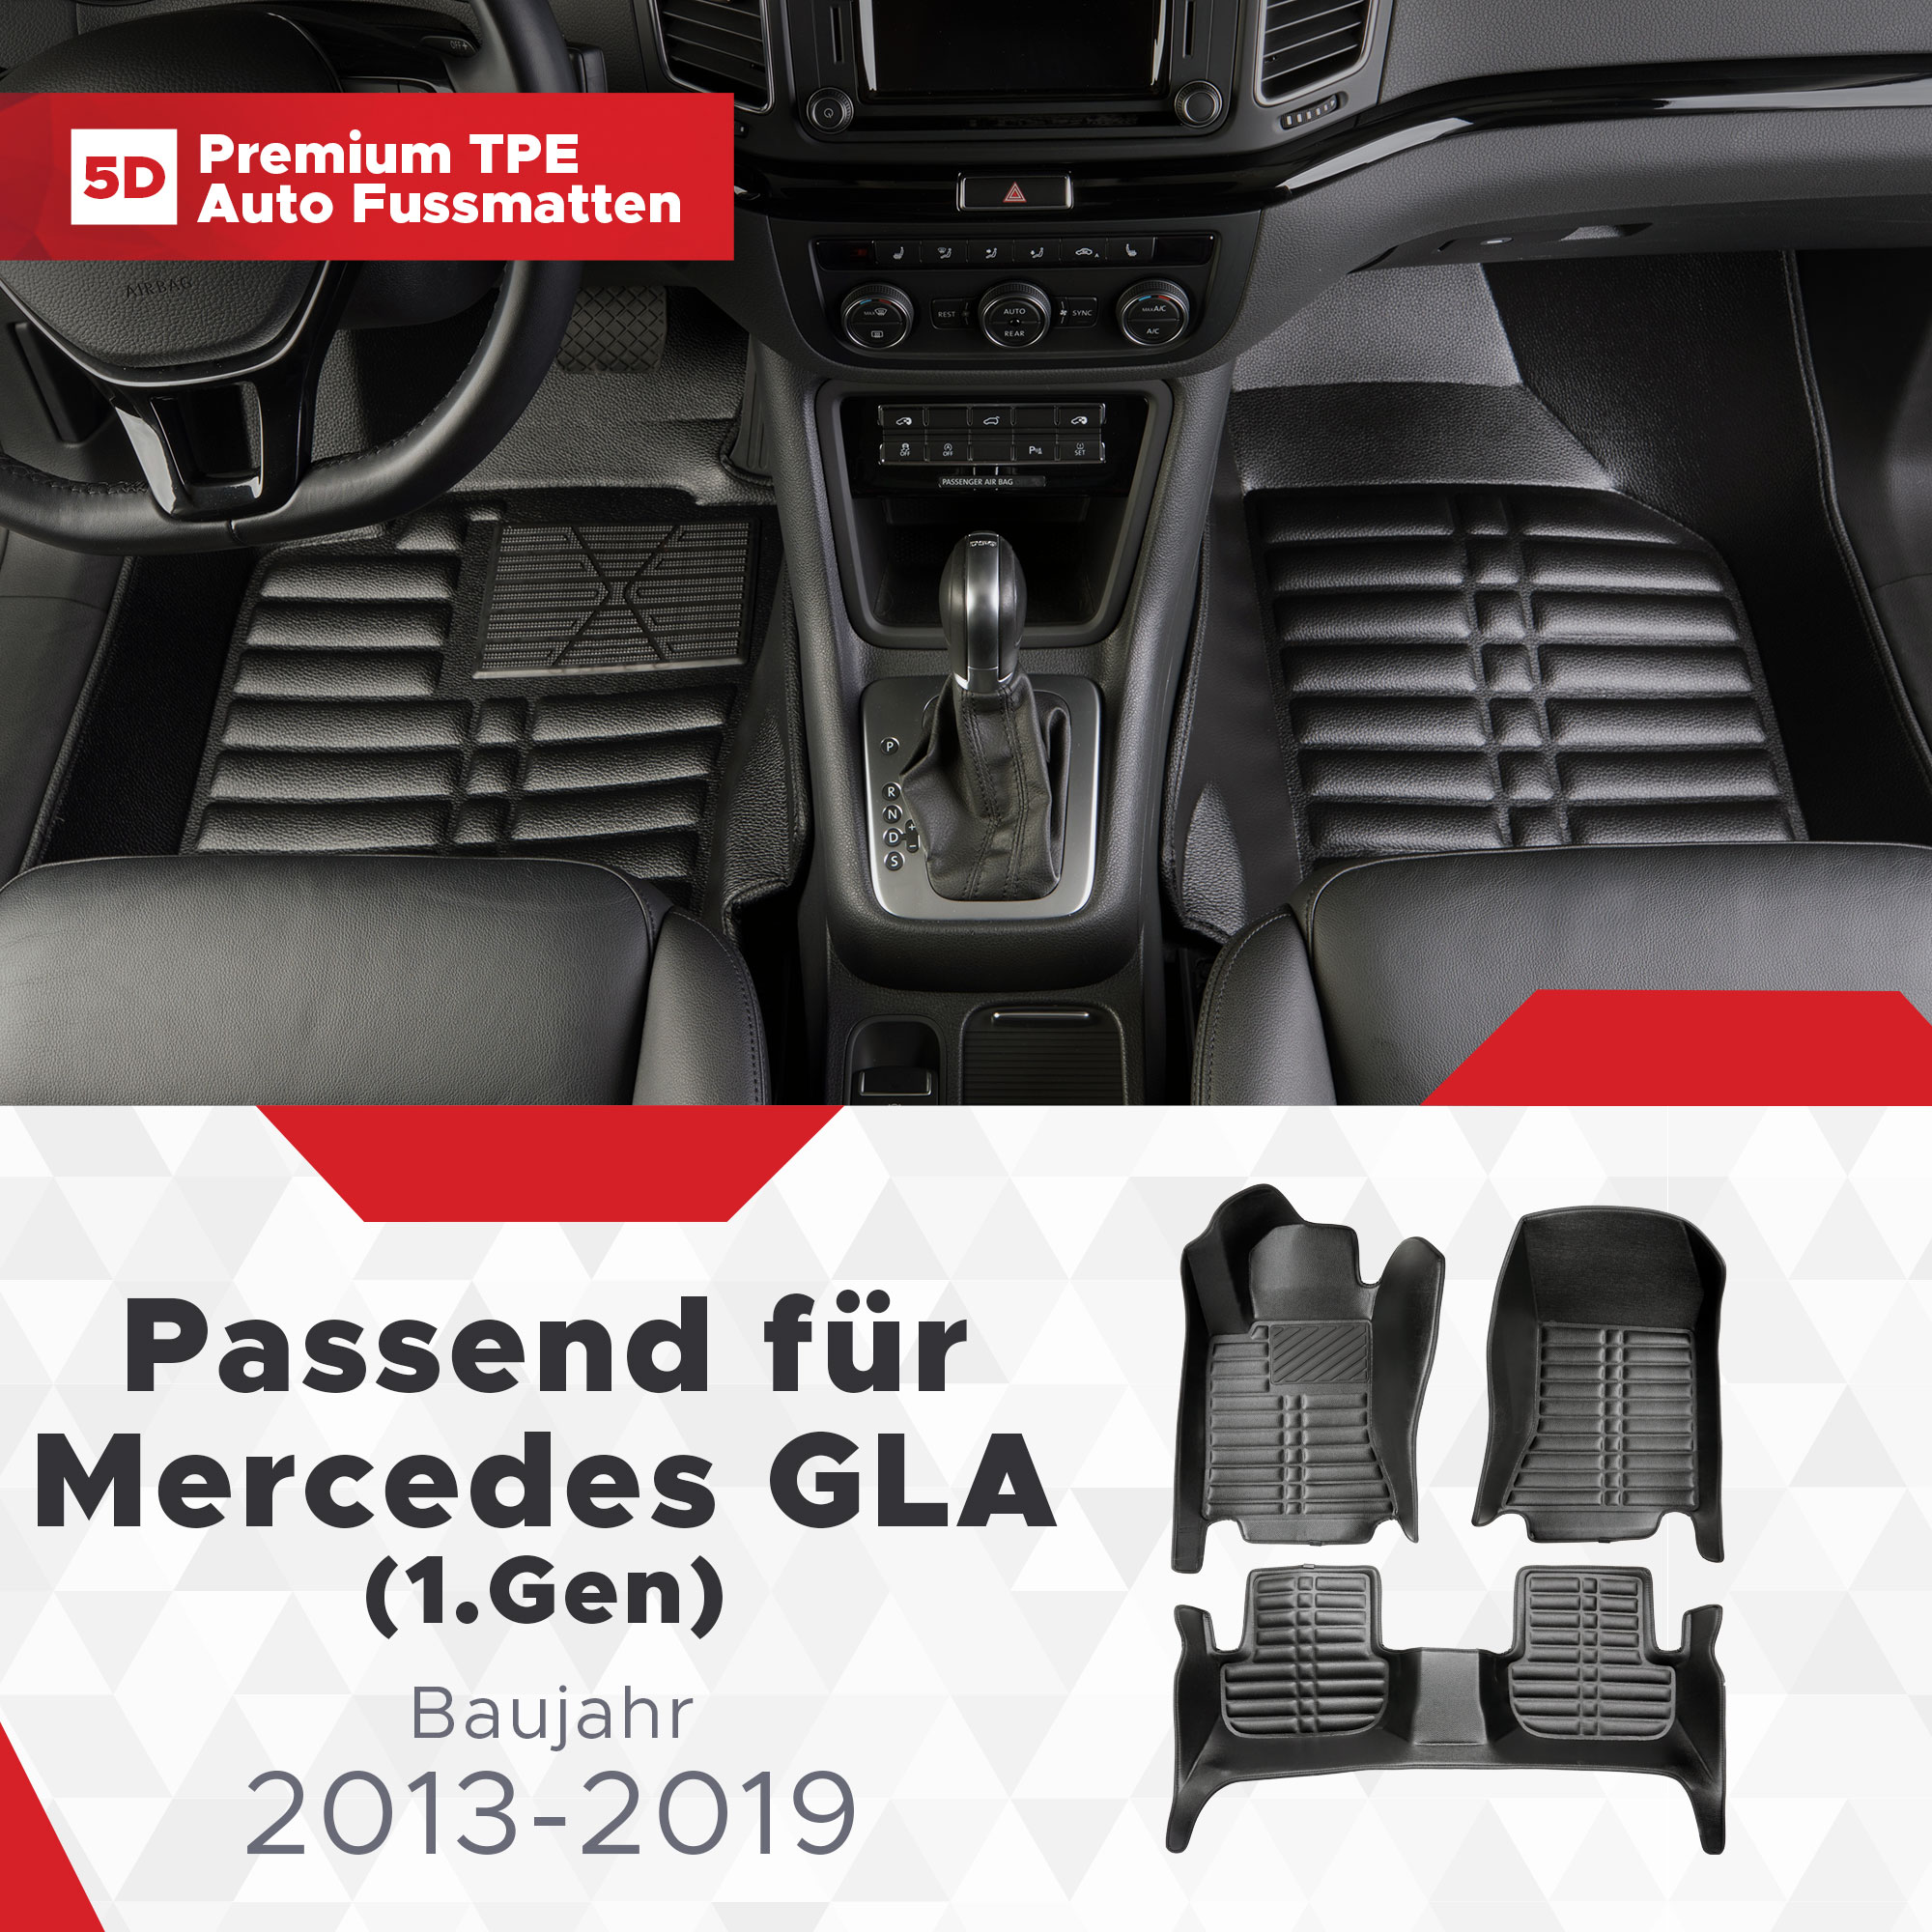 5D Mercedes GLA (X156) Fussmatten Bj 2013-2019 TPE